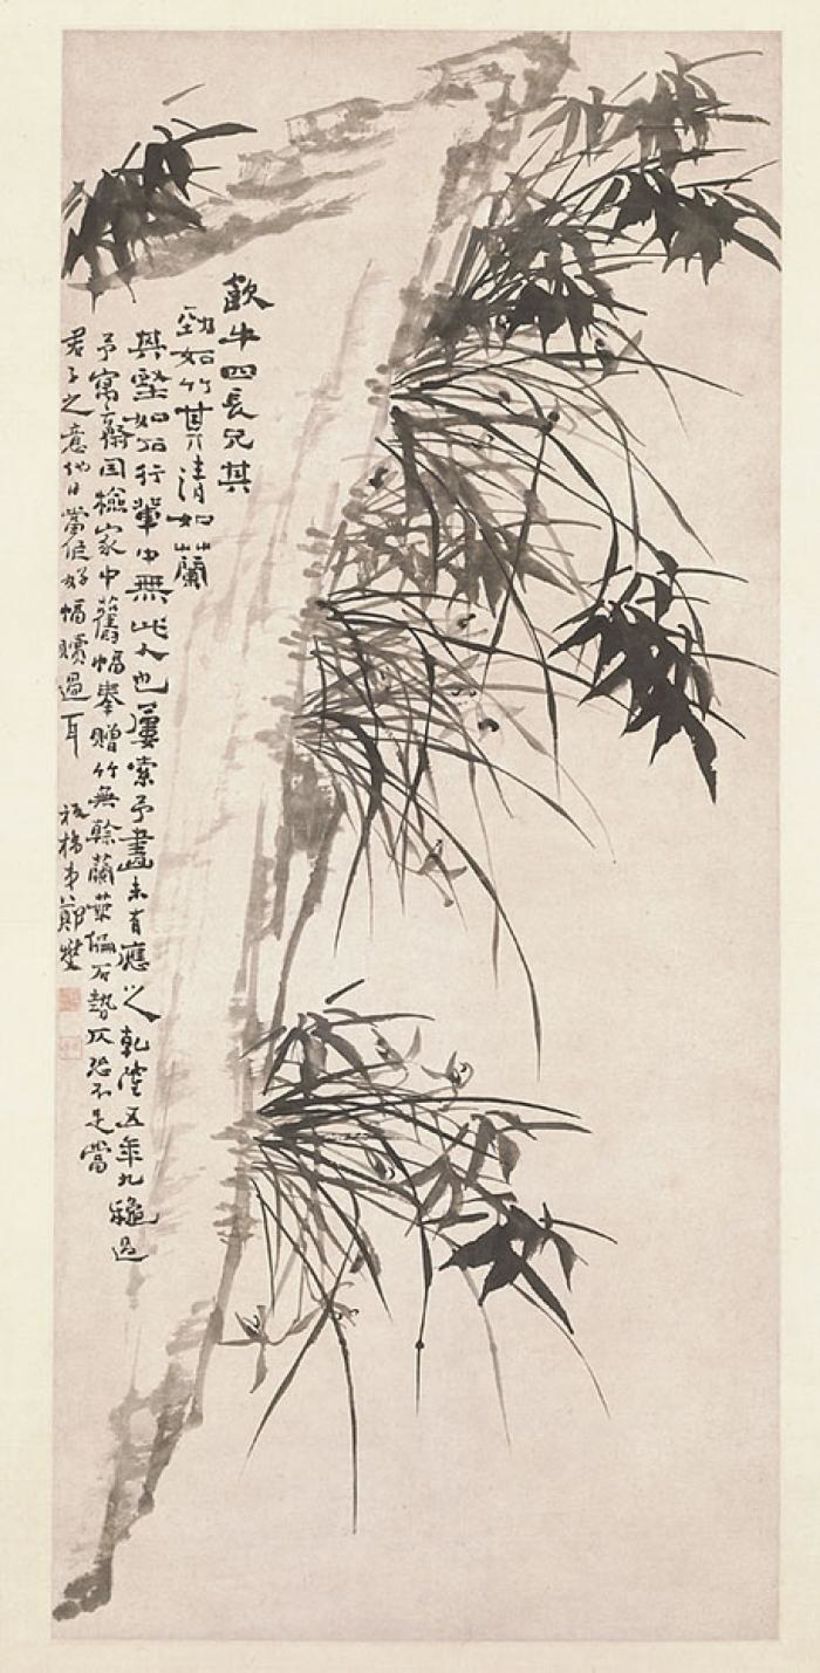 Orquídeas y bambú de Zheng Xie, año 1740.